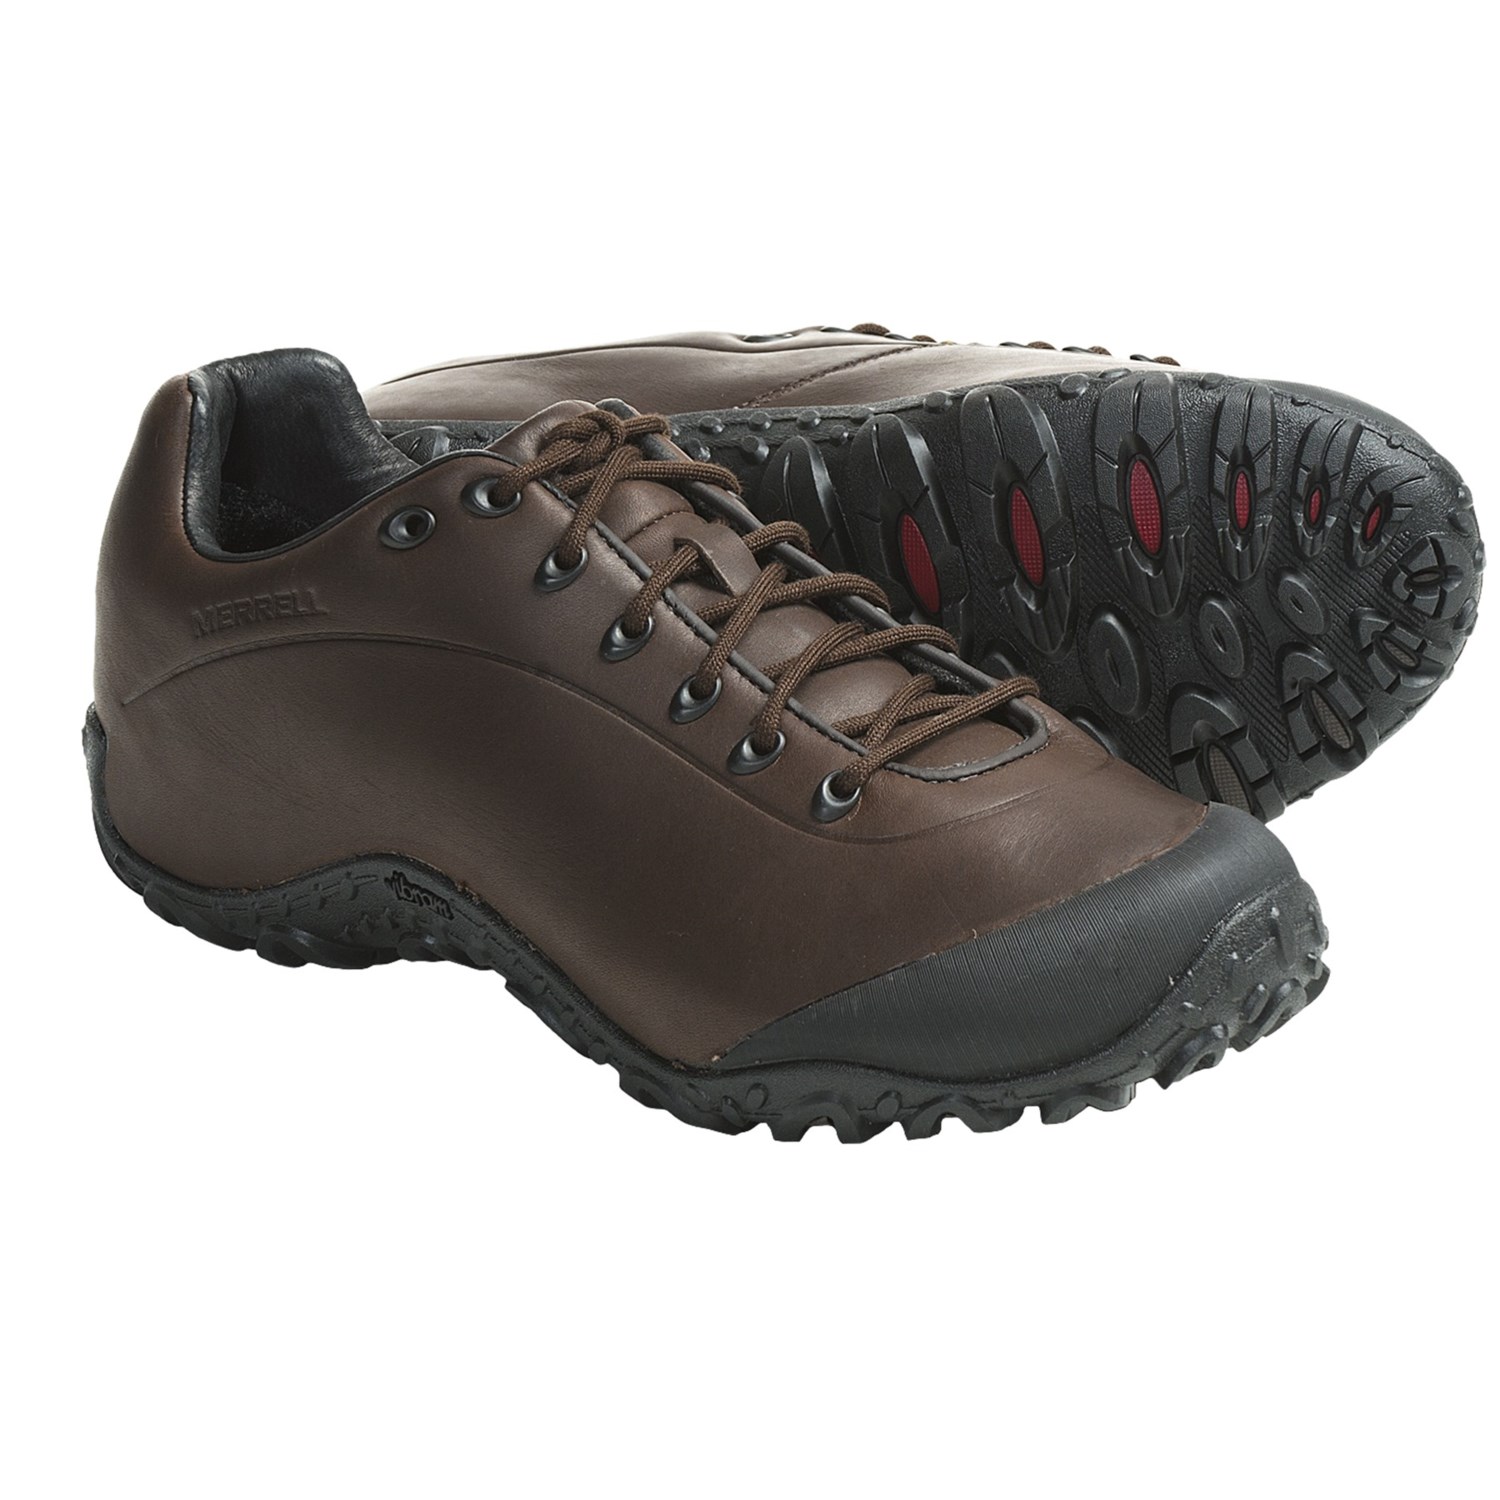 Merrell Chameleon 4 Trek Shoes (For Men) 4403H - Save 35%